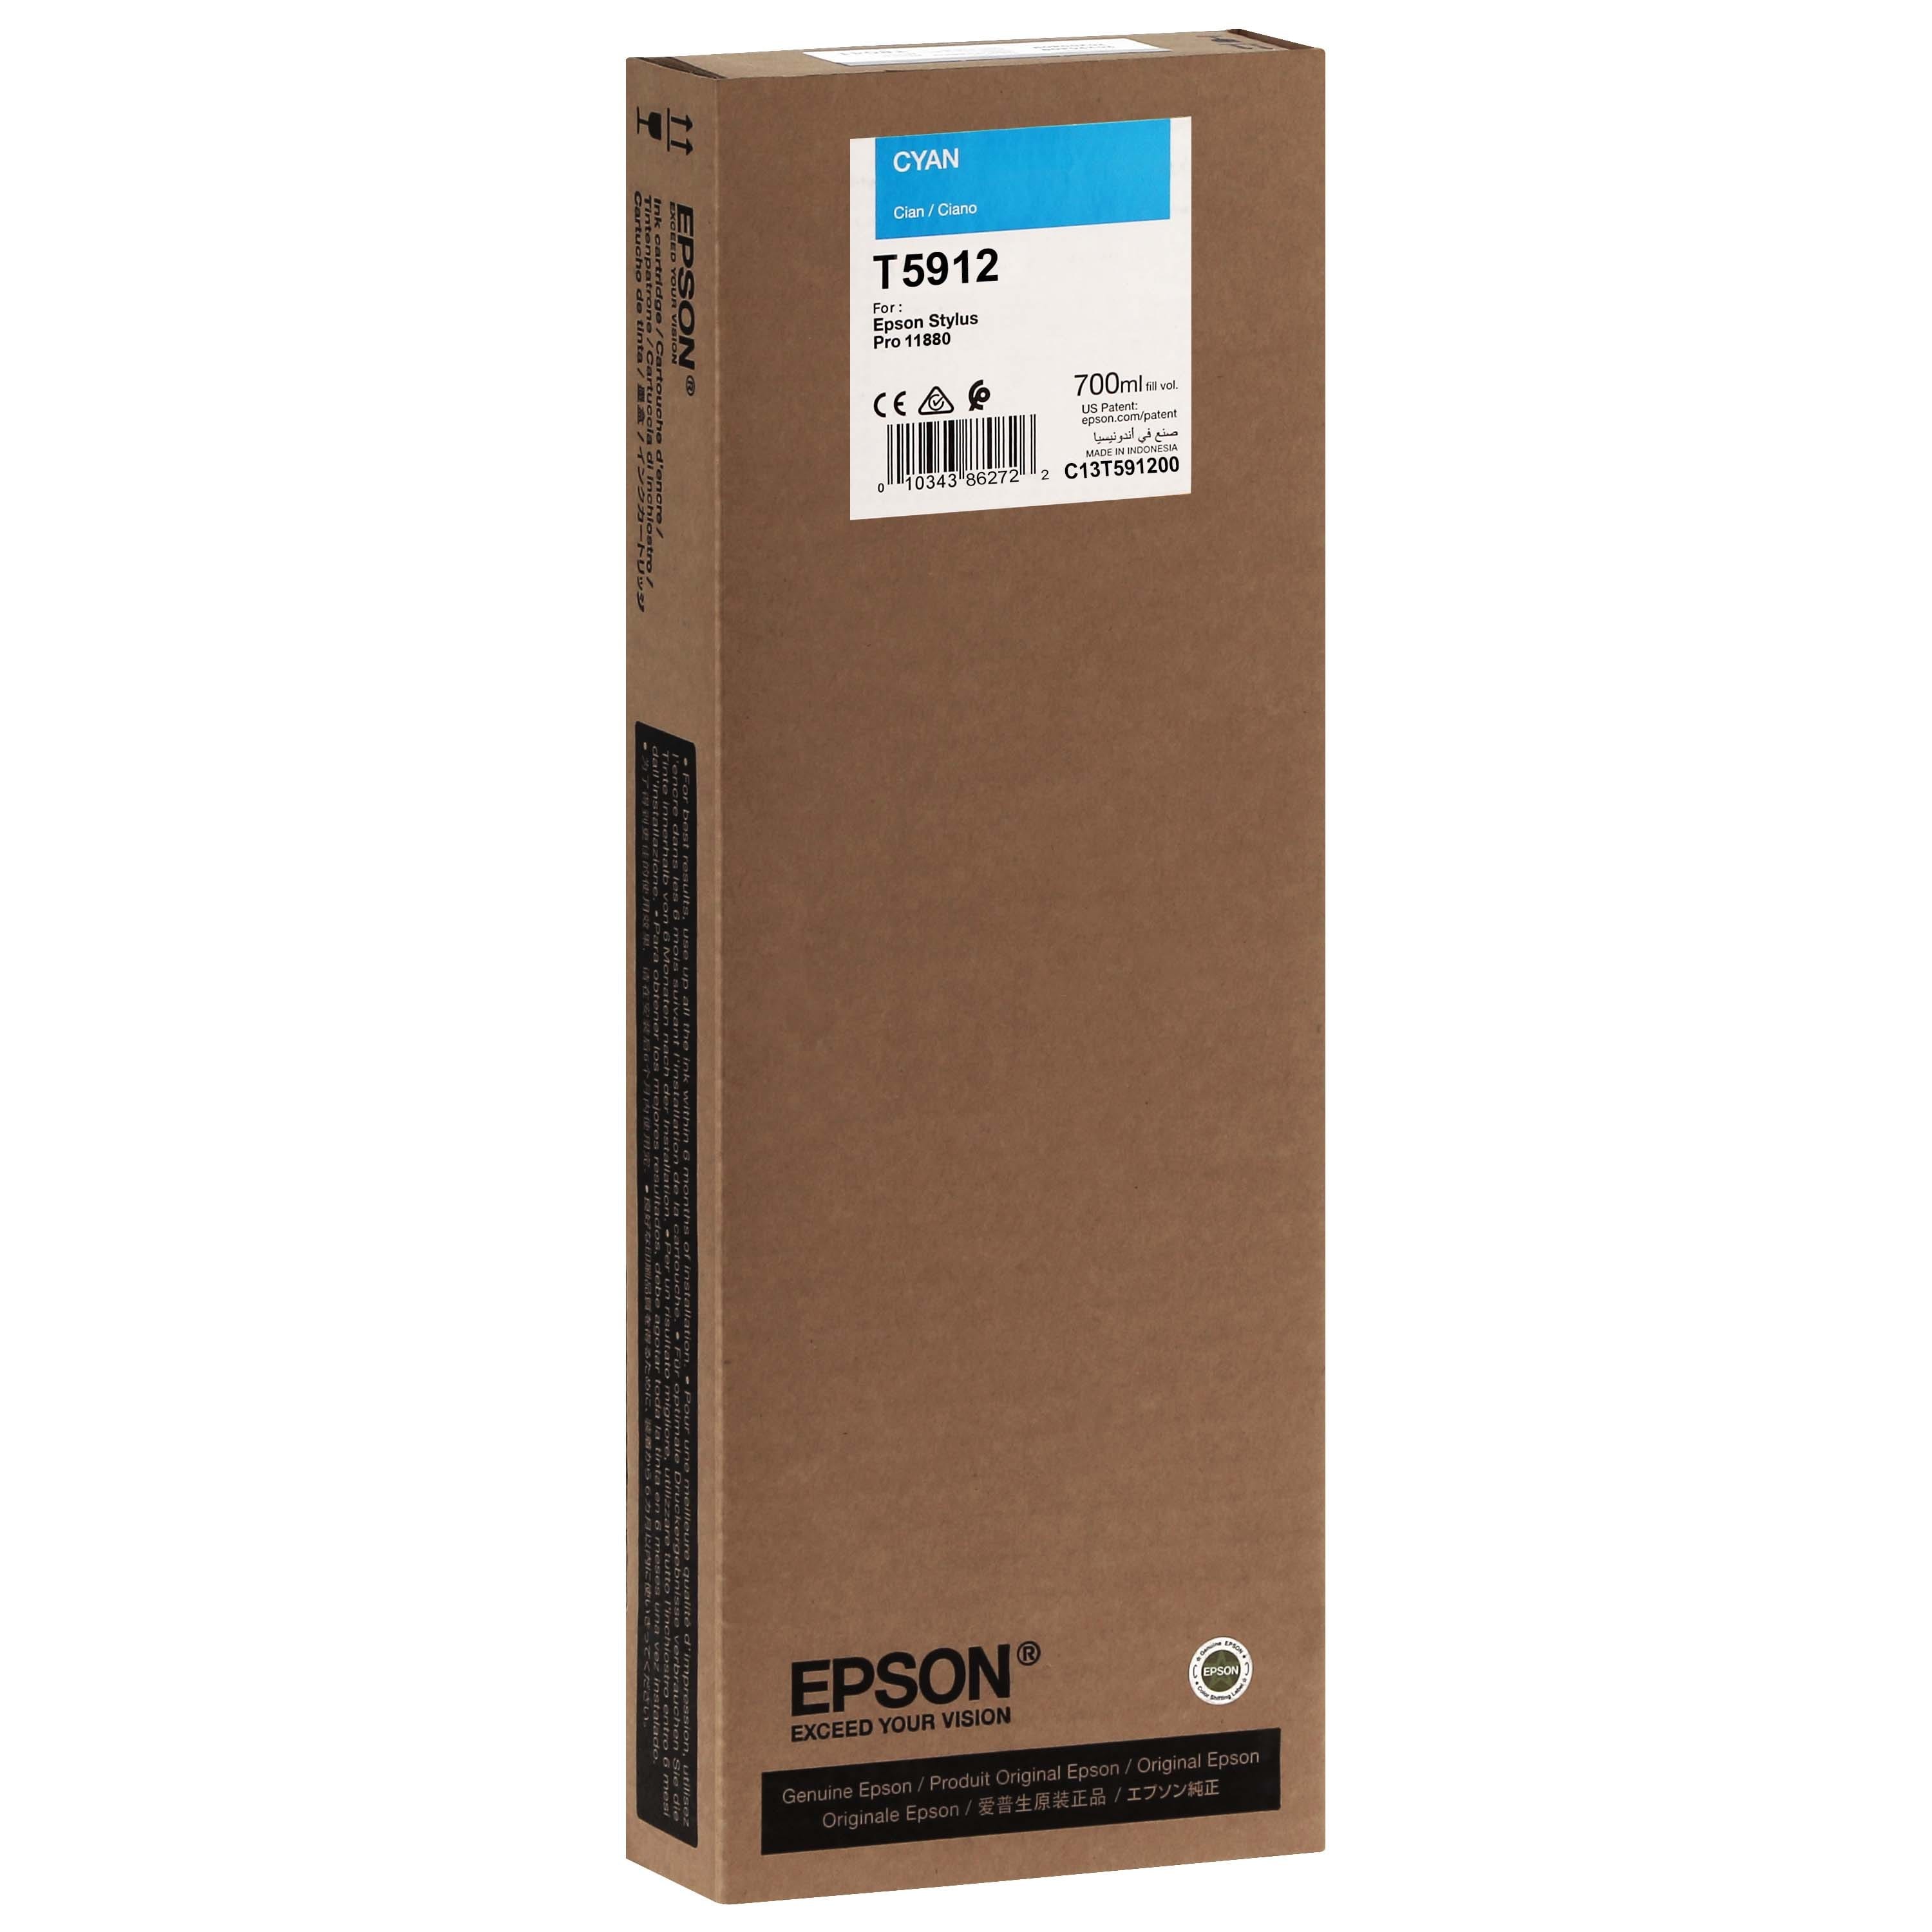 EPSON - Cartouche d'encre traceur T5912 Pour imprimante 11880 Cyan - 700ml